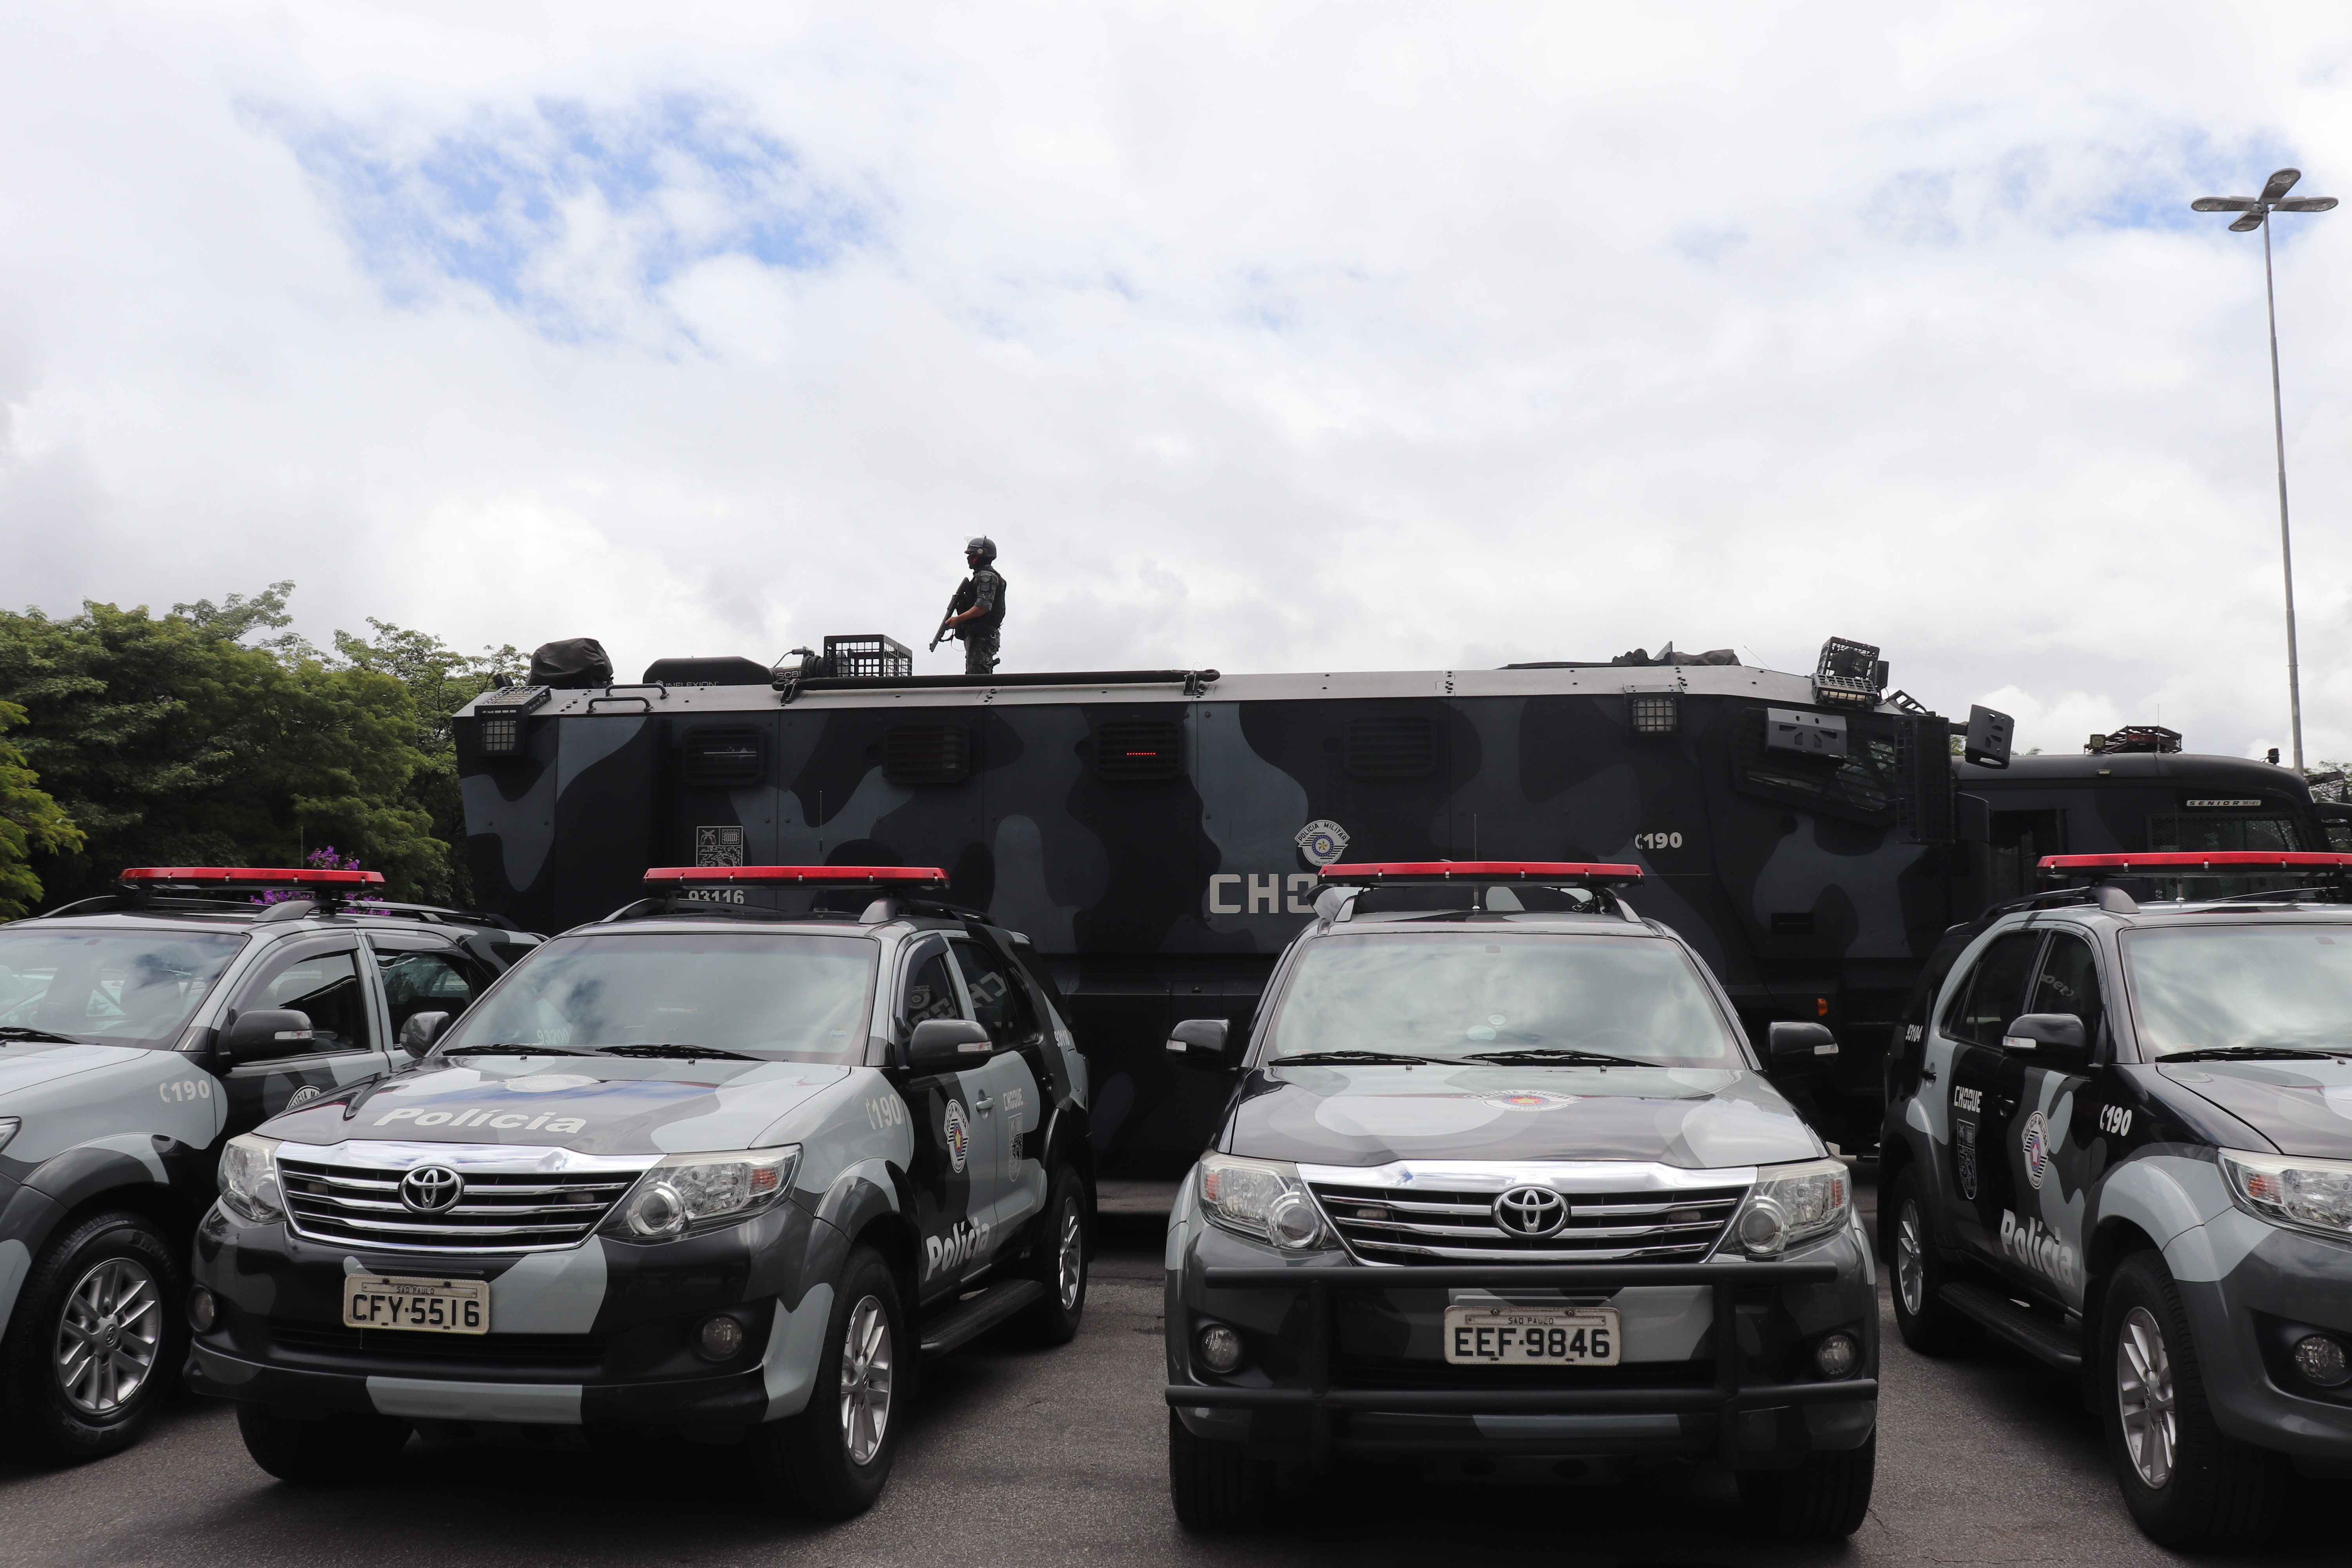 Dezenas de carros da PM e atiradores de elite contra os servidores no entorno da Assembleia Legislativa. Foto: Flaviana Serafim/SIFUSPESP